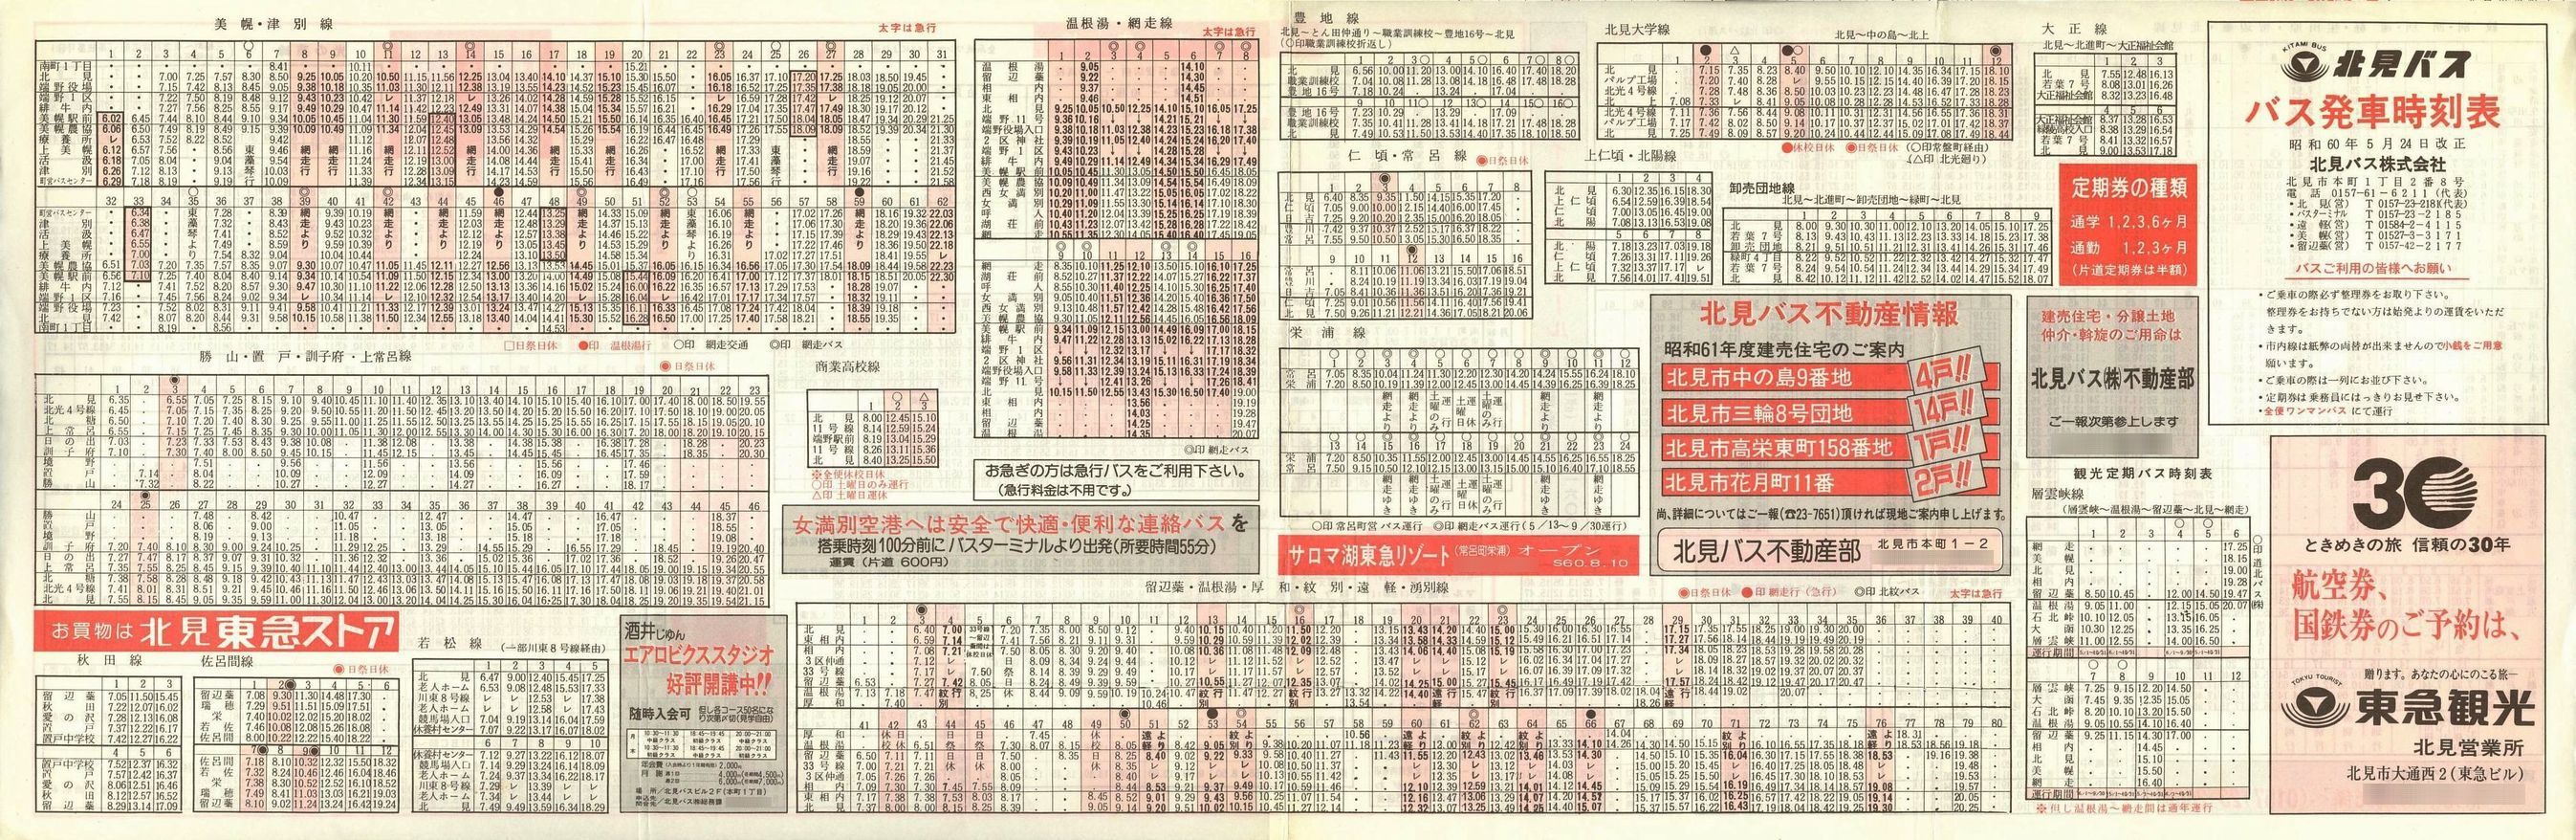 1985-05-24改正_北見バス_時刻表表面